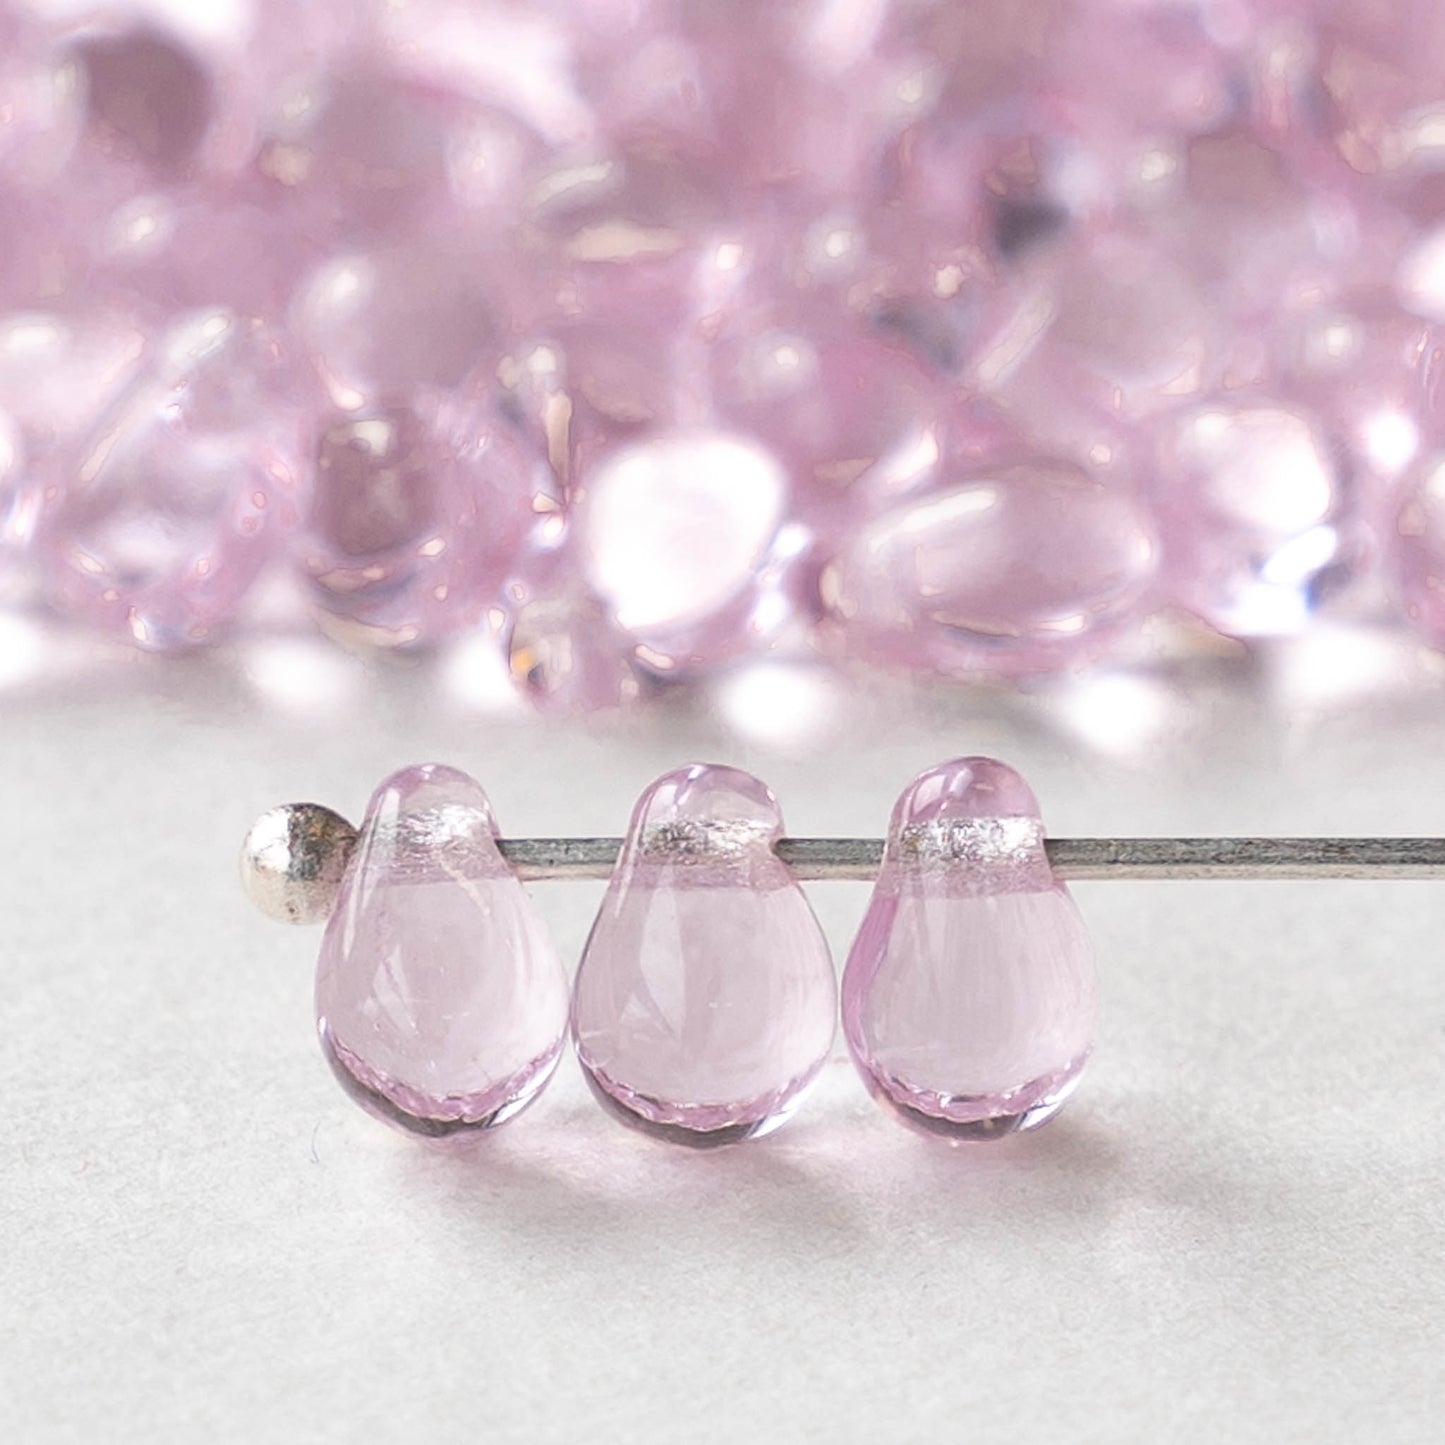 4x6mm Glass Teardrop Beads - Light Pink - 50 Beads